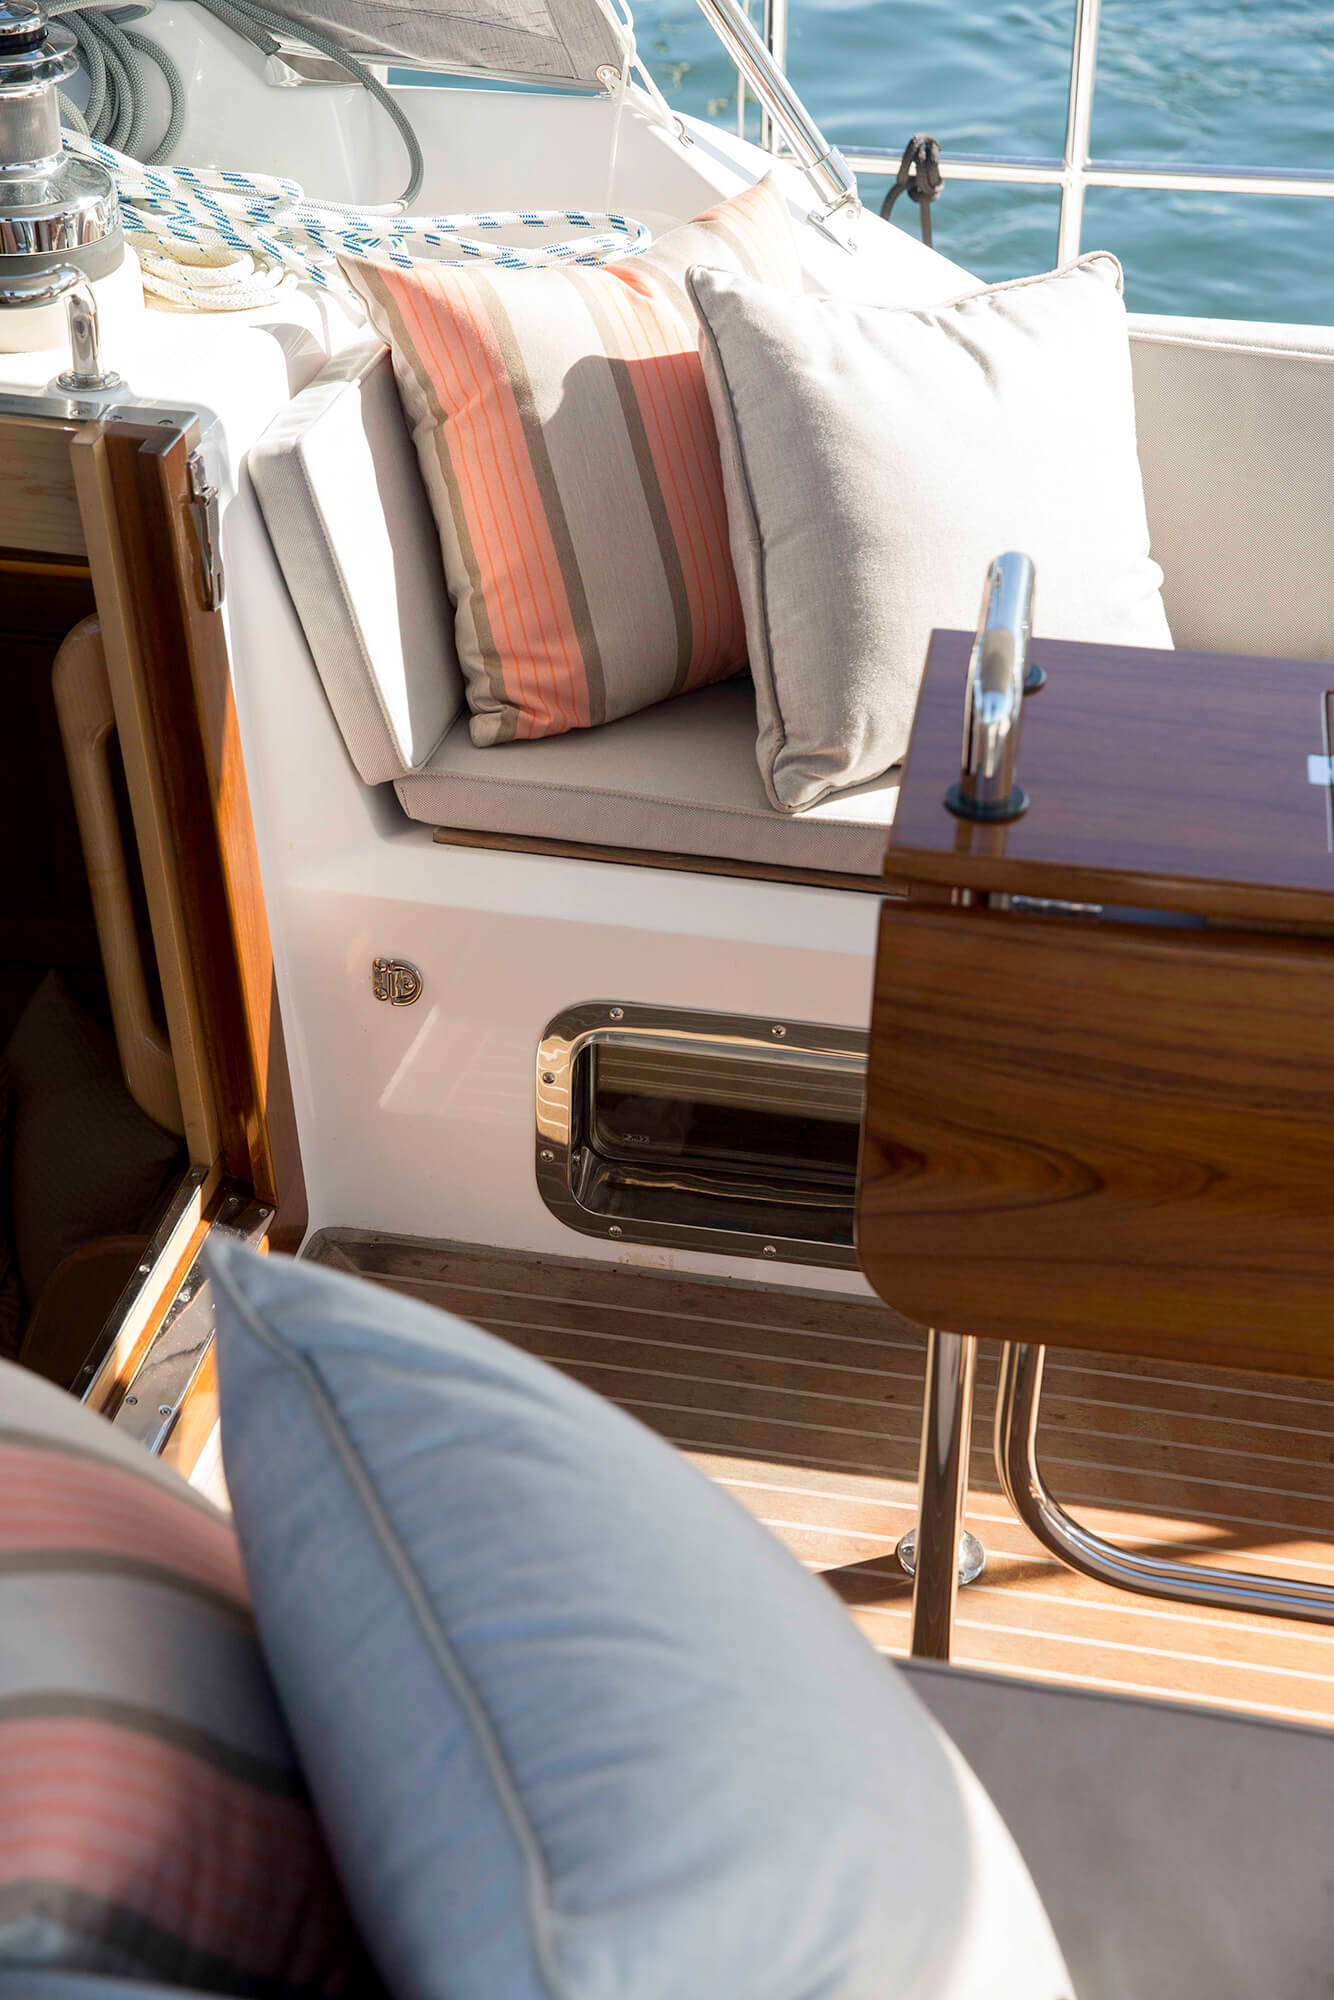 Cojines a rayas beige y rosa de tela Sunbrella sobre cojines de asiento en la cubierta de un bote